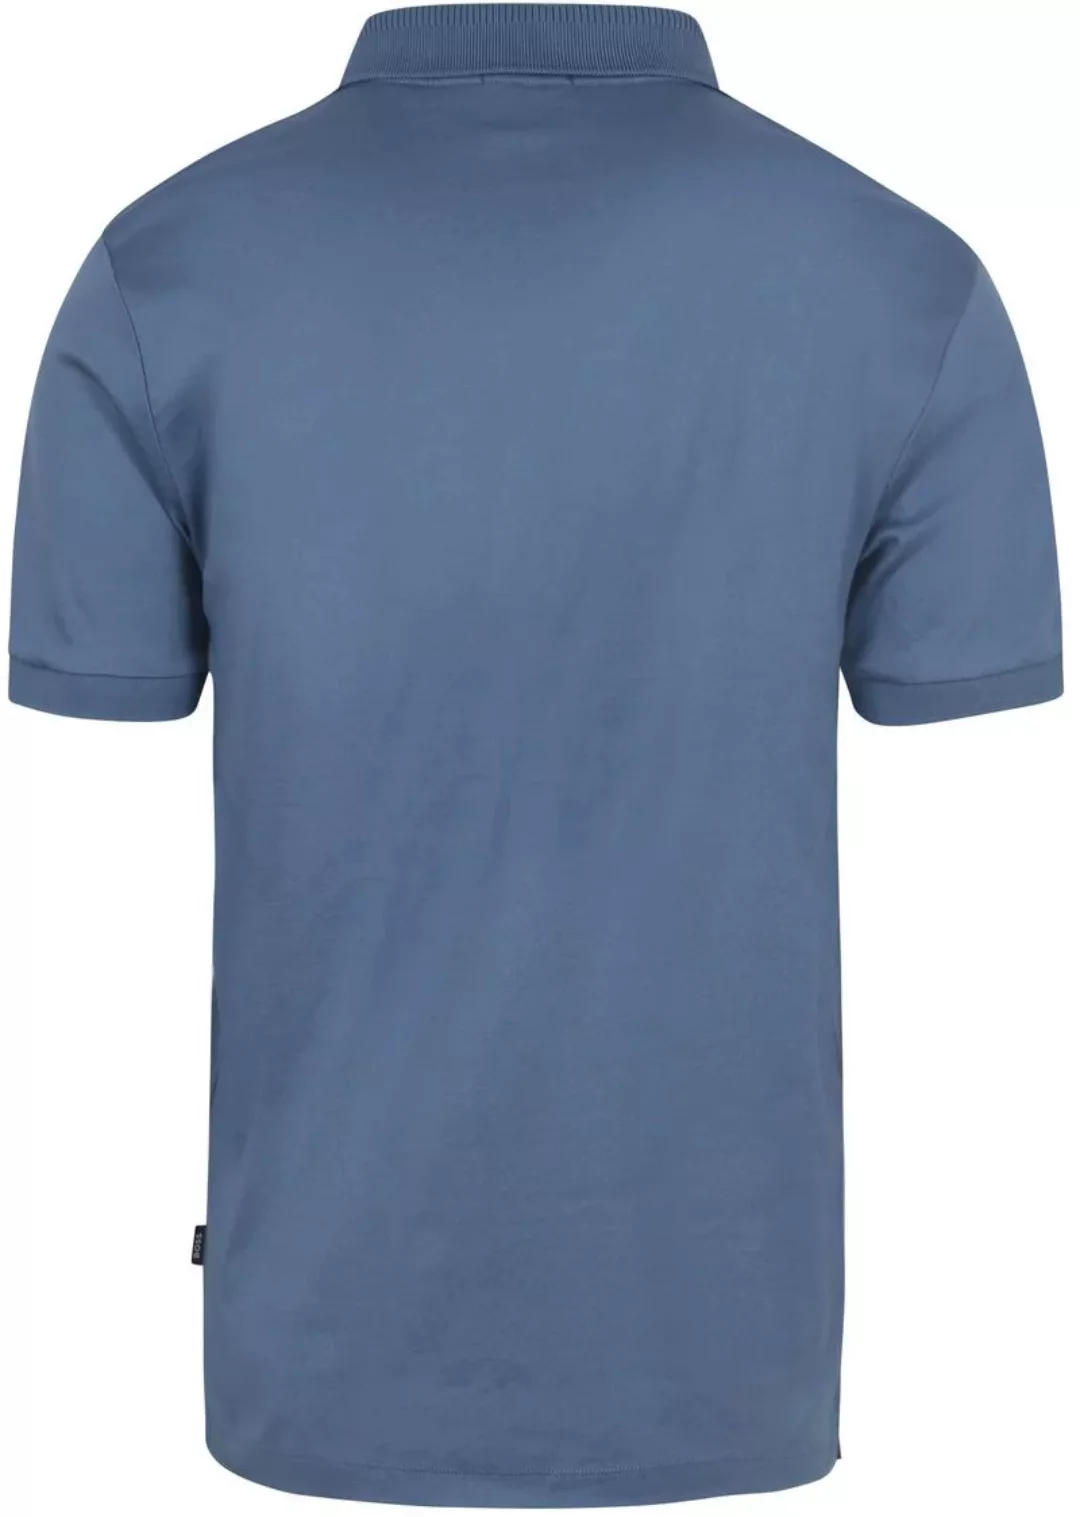 BOSS Poloshirt Polston Blau - Größe L günstig online kaufen